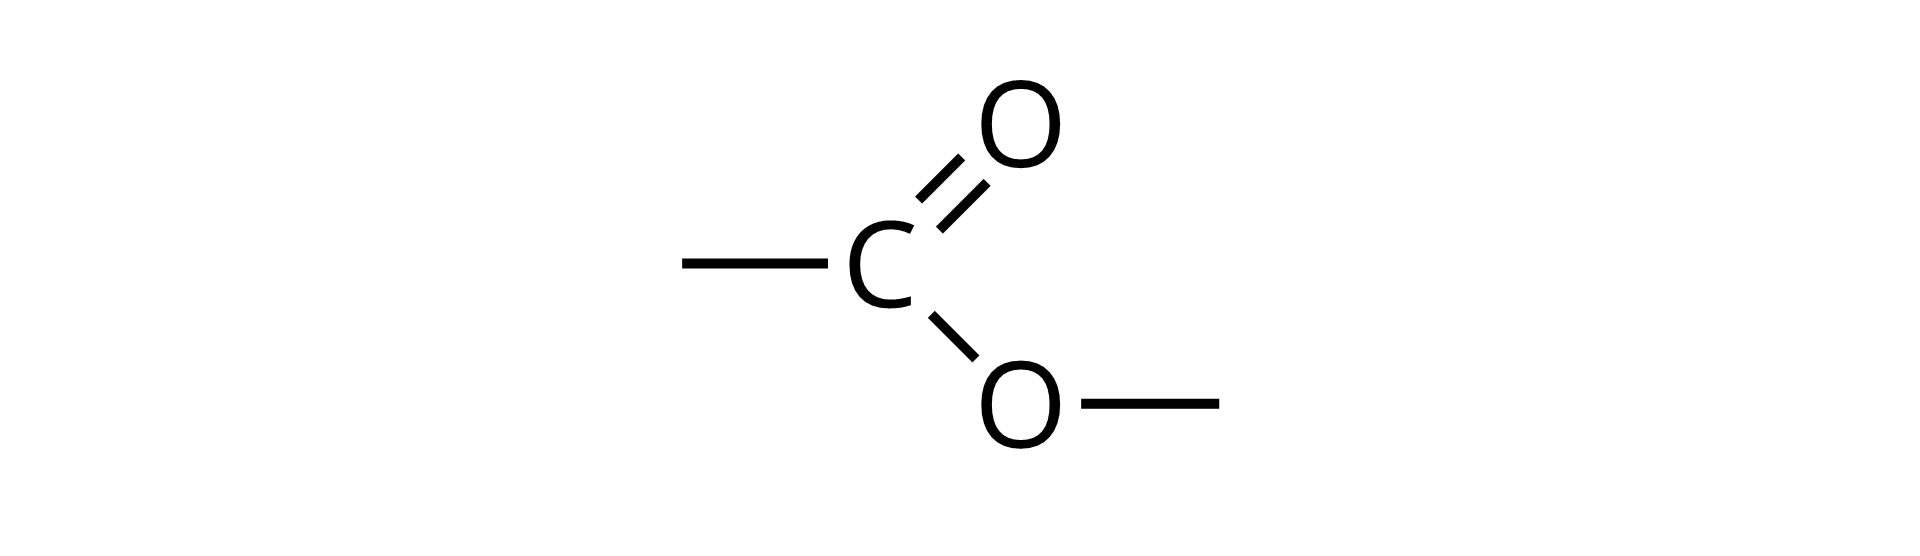 Ilustracja przedstawiająca wzór szkieletowy octanu metylu, który to zbudowany jest z grupy metylowej CH3 związanej z atomem węgla połączonym za pomocą wiązania podwójnego z pierwszym atomem tlenu oraz za pomocą wiązania pojedynczego z drugim atomem tlenu podstawionym grupą metylową CH3.